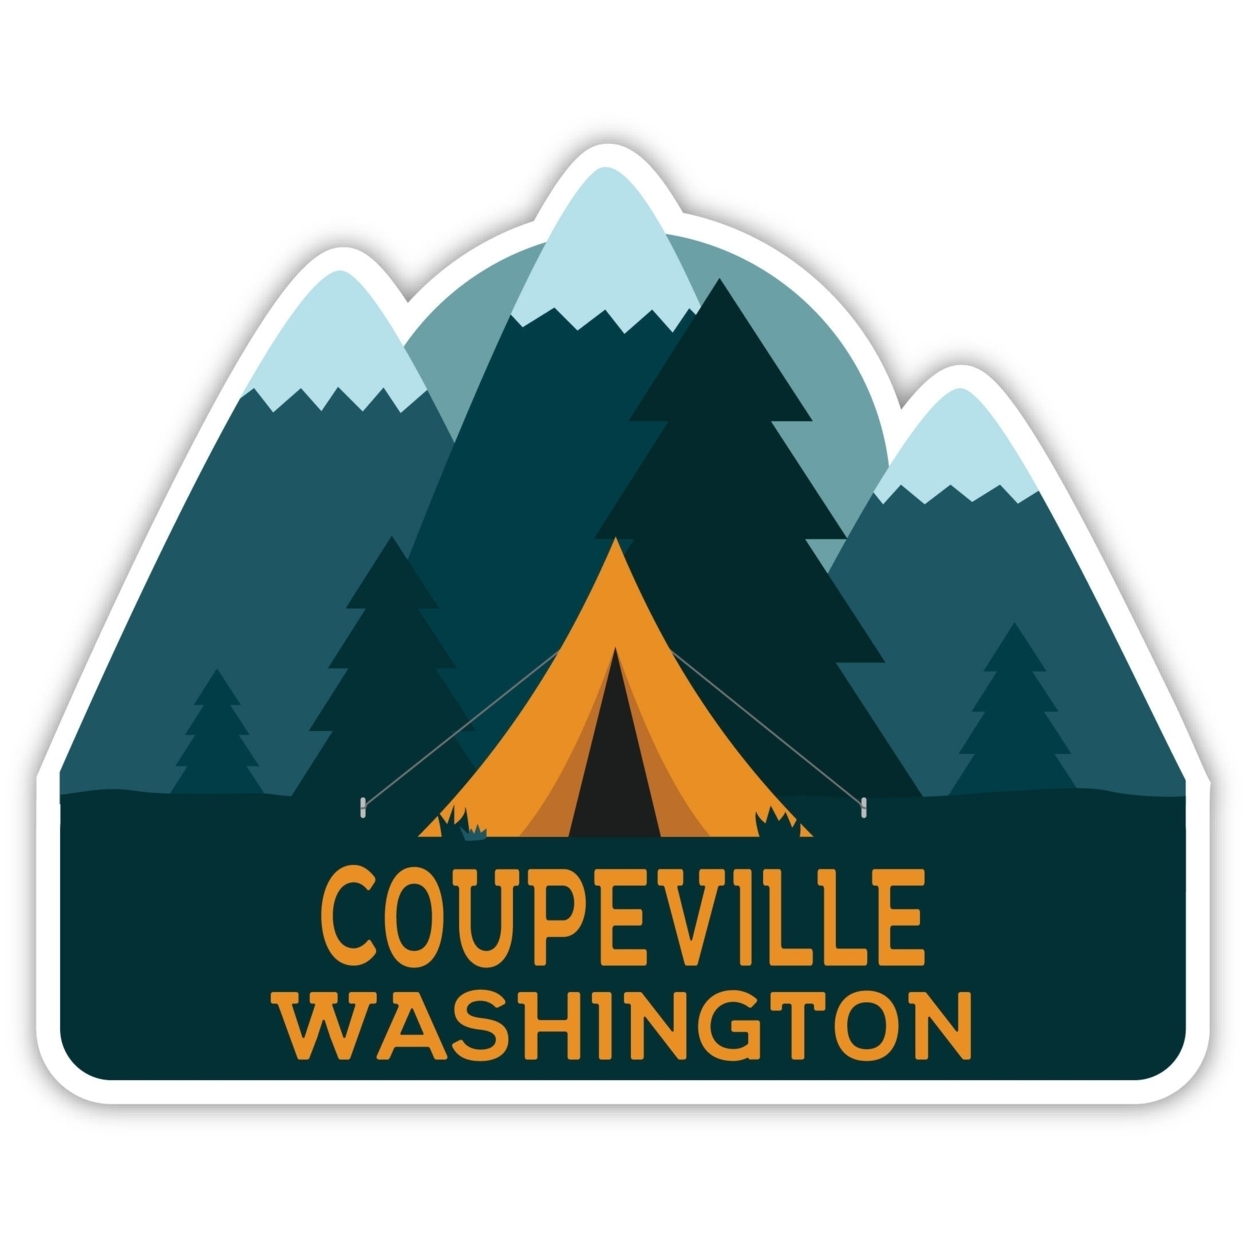 Coupeville Washington Souvenir Decorative Stickers (Choose Theme And Size) - Single Unit, 8-Inch, Tent